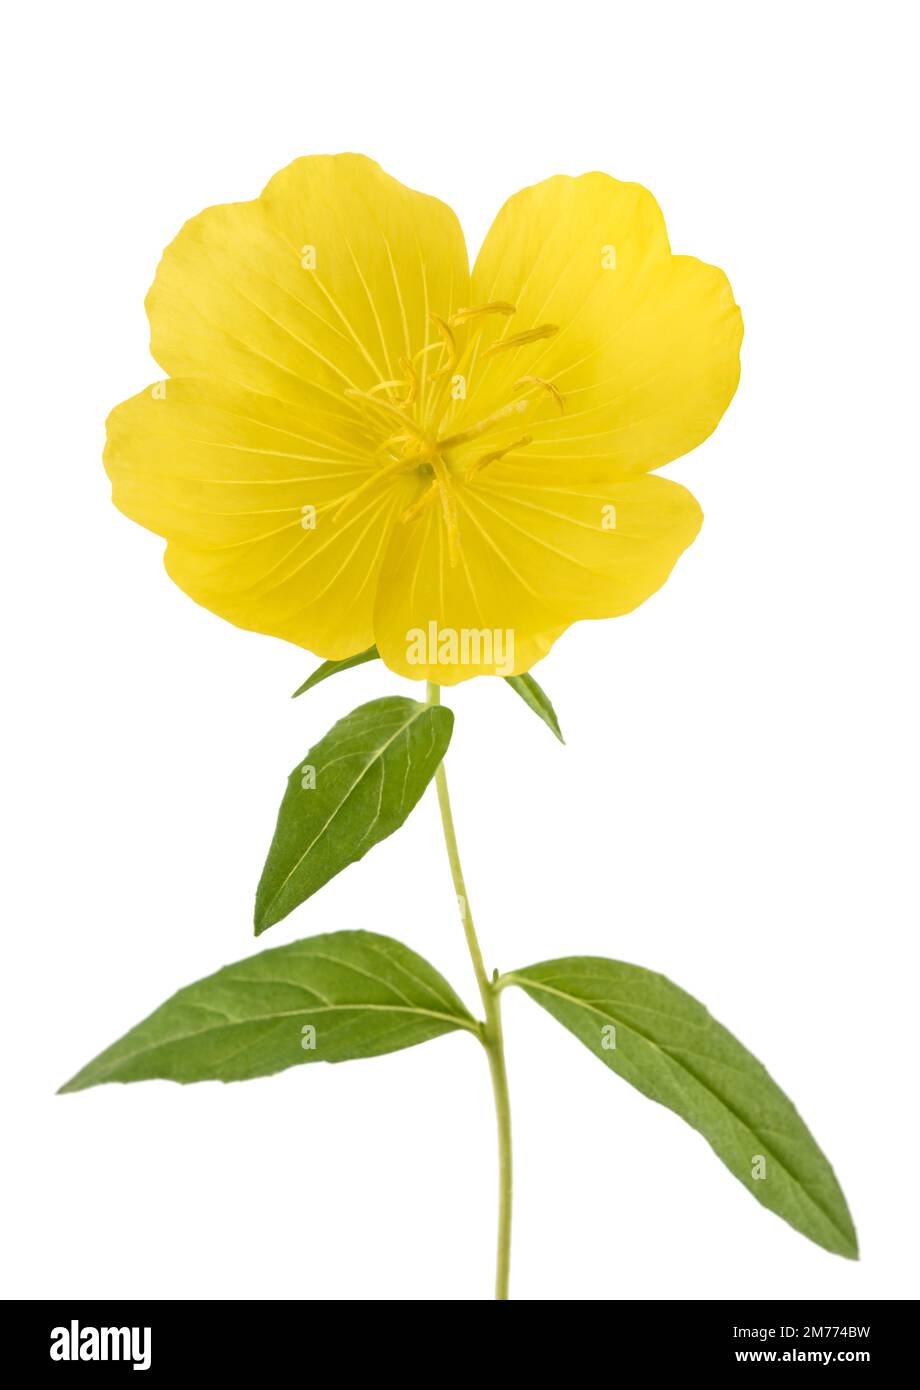 Evening primrose flower isolated on white background Stock Photo